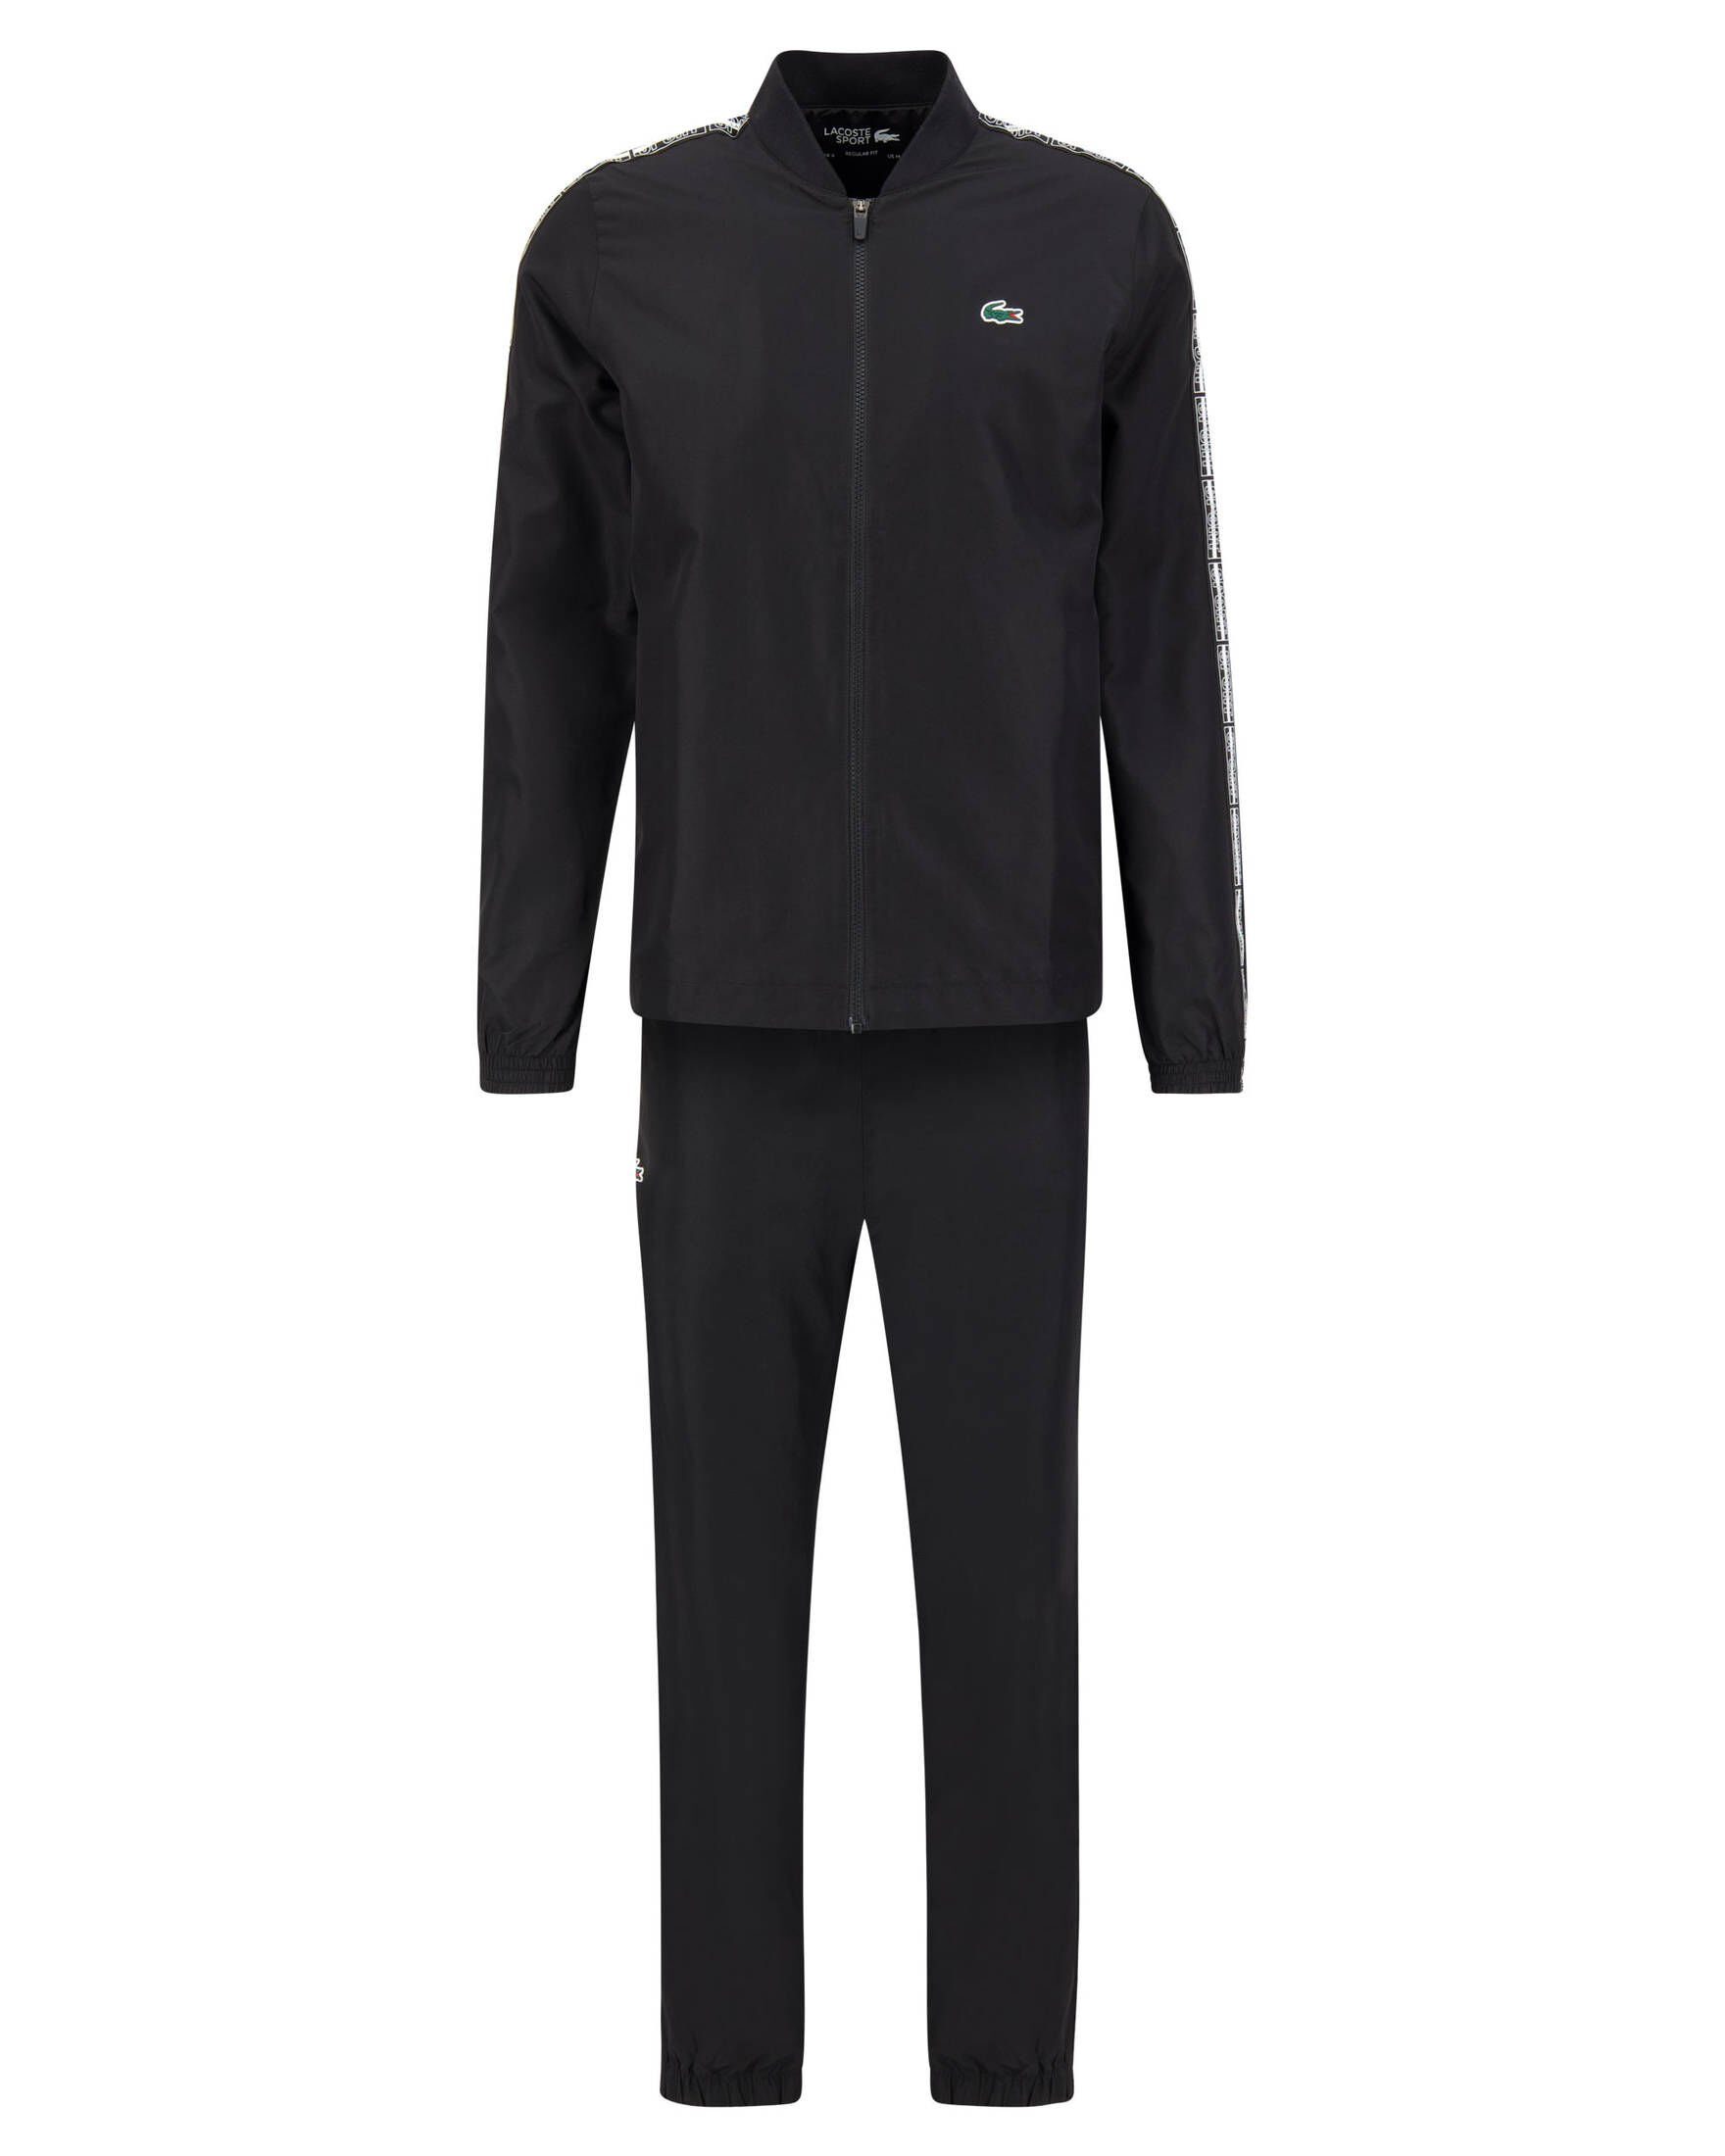 Lacoste (200) Herren Trainingsanzug schwarz Tennis-Anzug Sport